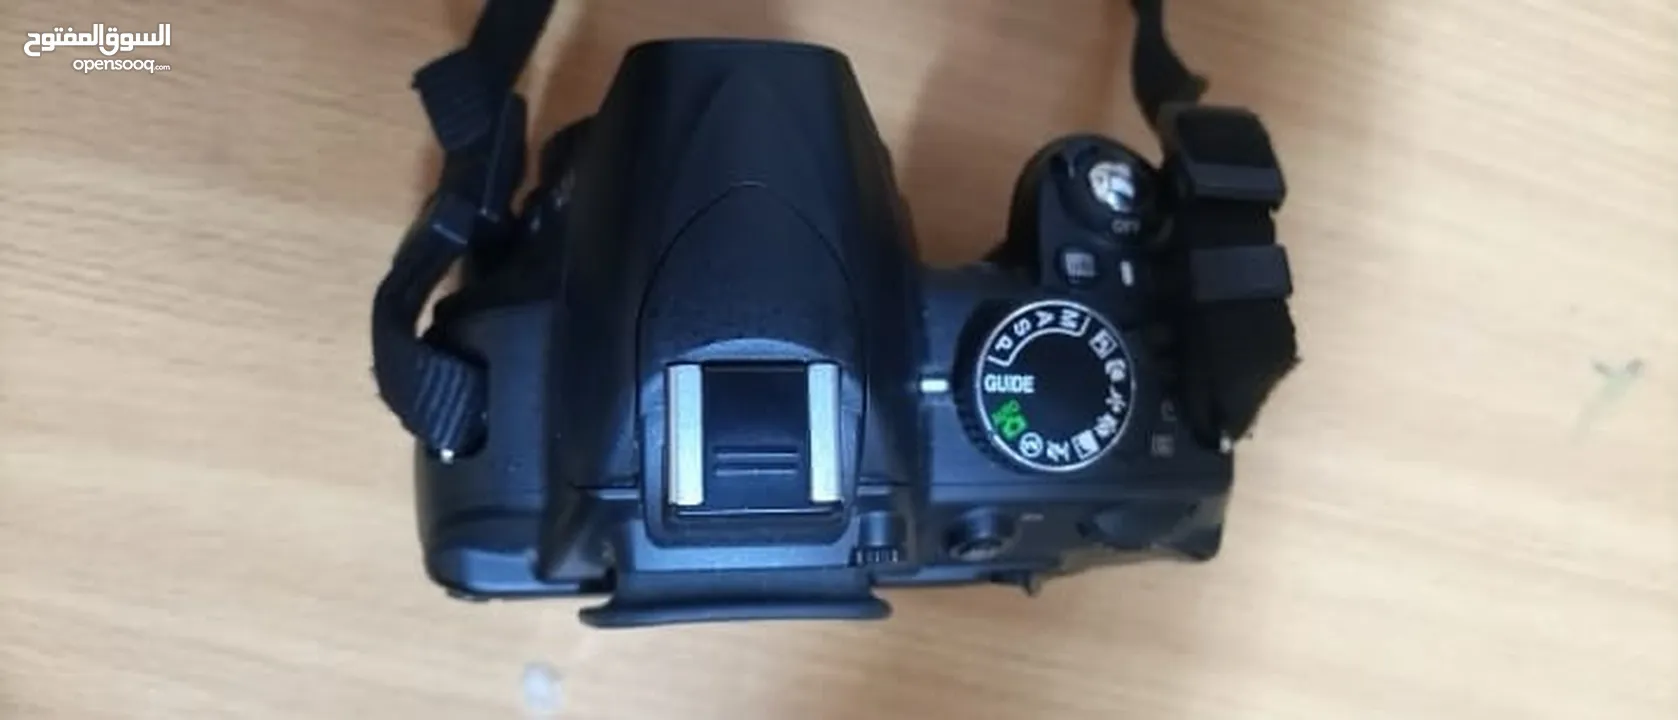 كاميرا نيكون 3100D بحالة الوكالة مع عدسة 55-200